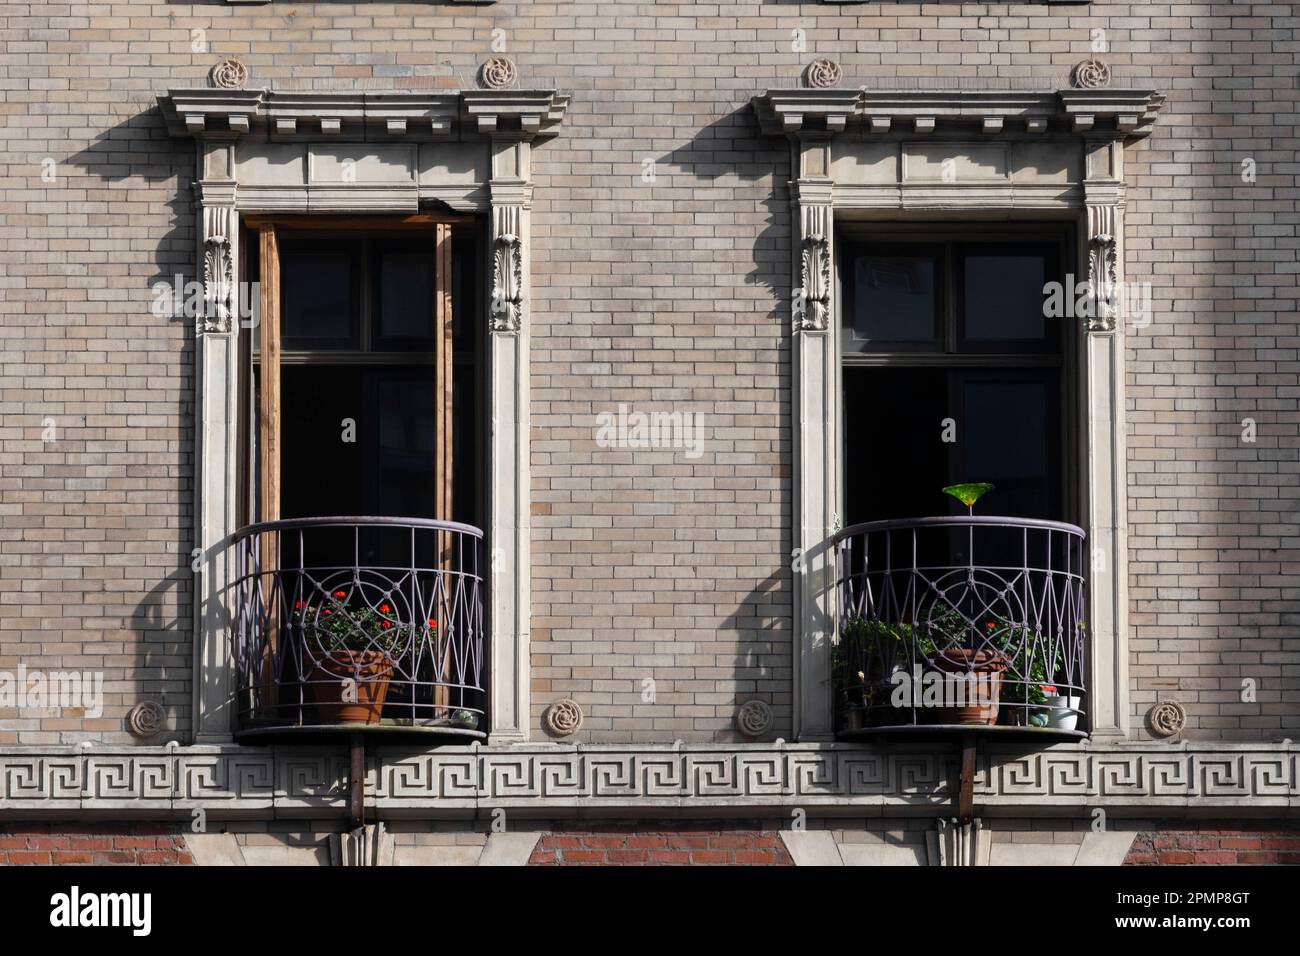 Balconi decorativi su un edificio residenziale. Le ringhiere avvolte in ferro battuto con gerani rossi creano un incantevole ambiente urbano Foto Stock